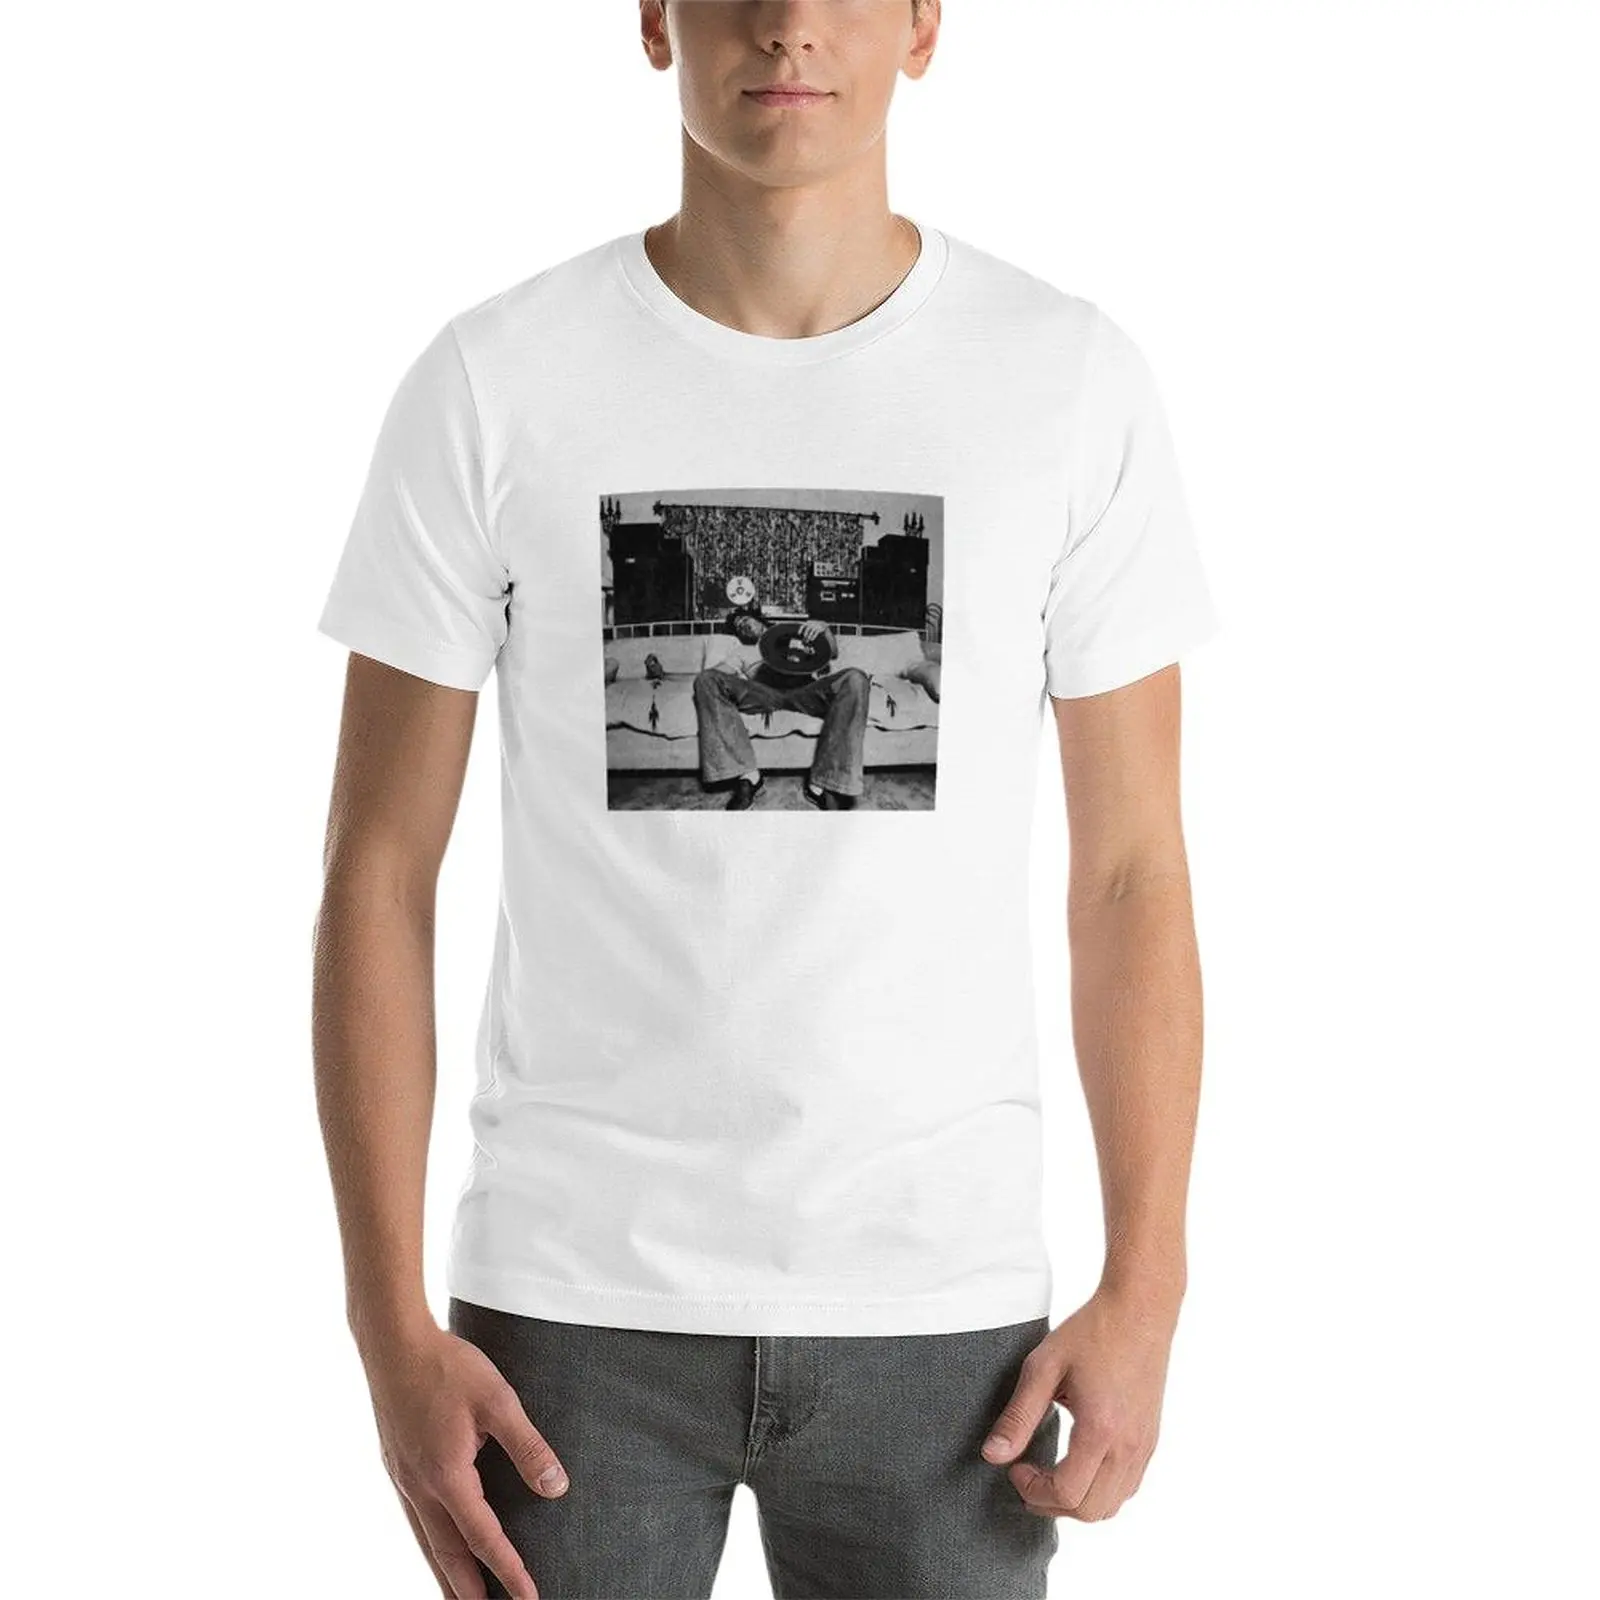 Новая футболка Rick Danko для отдыха, пустые футболки, мужская однотонная футболка, черные футболки, мужские футболки с графическим рисунком. Изображение 2